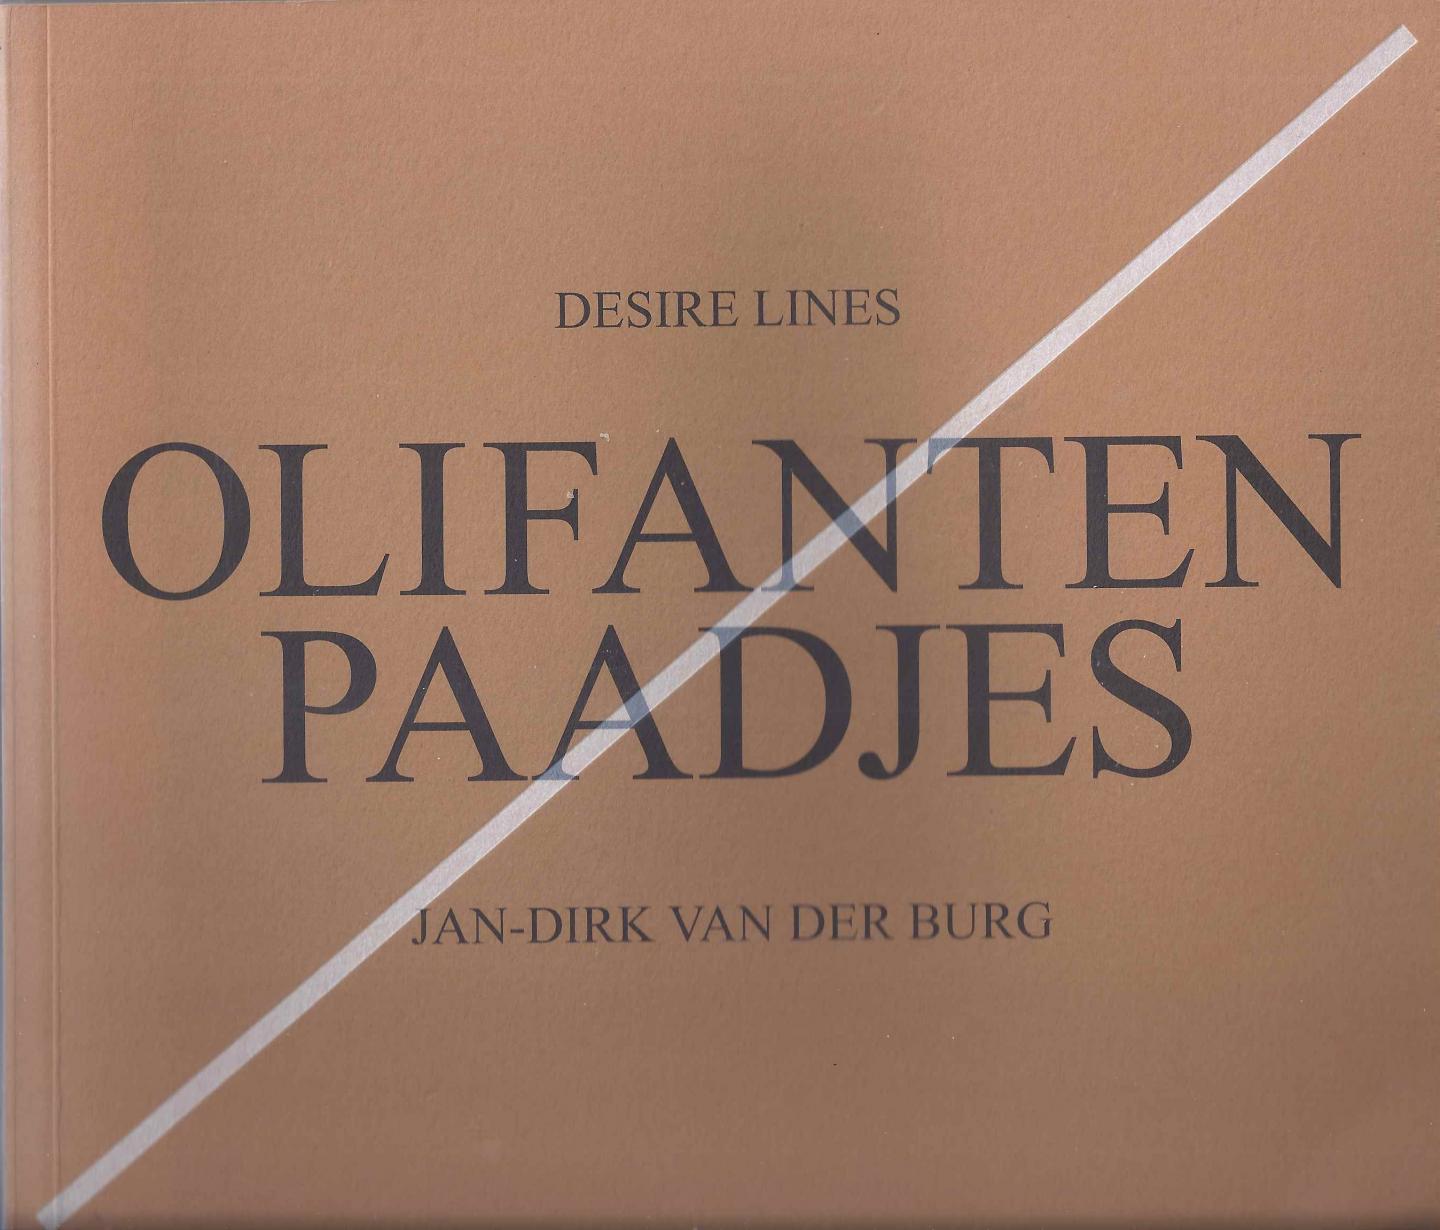 Burg, Jan-Dirk van der - Olifantenpaadjes. Desire lines.